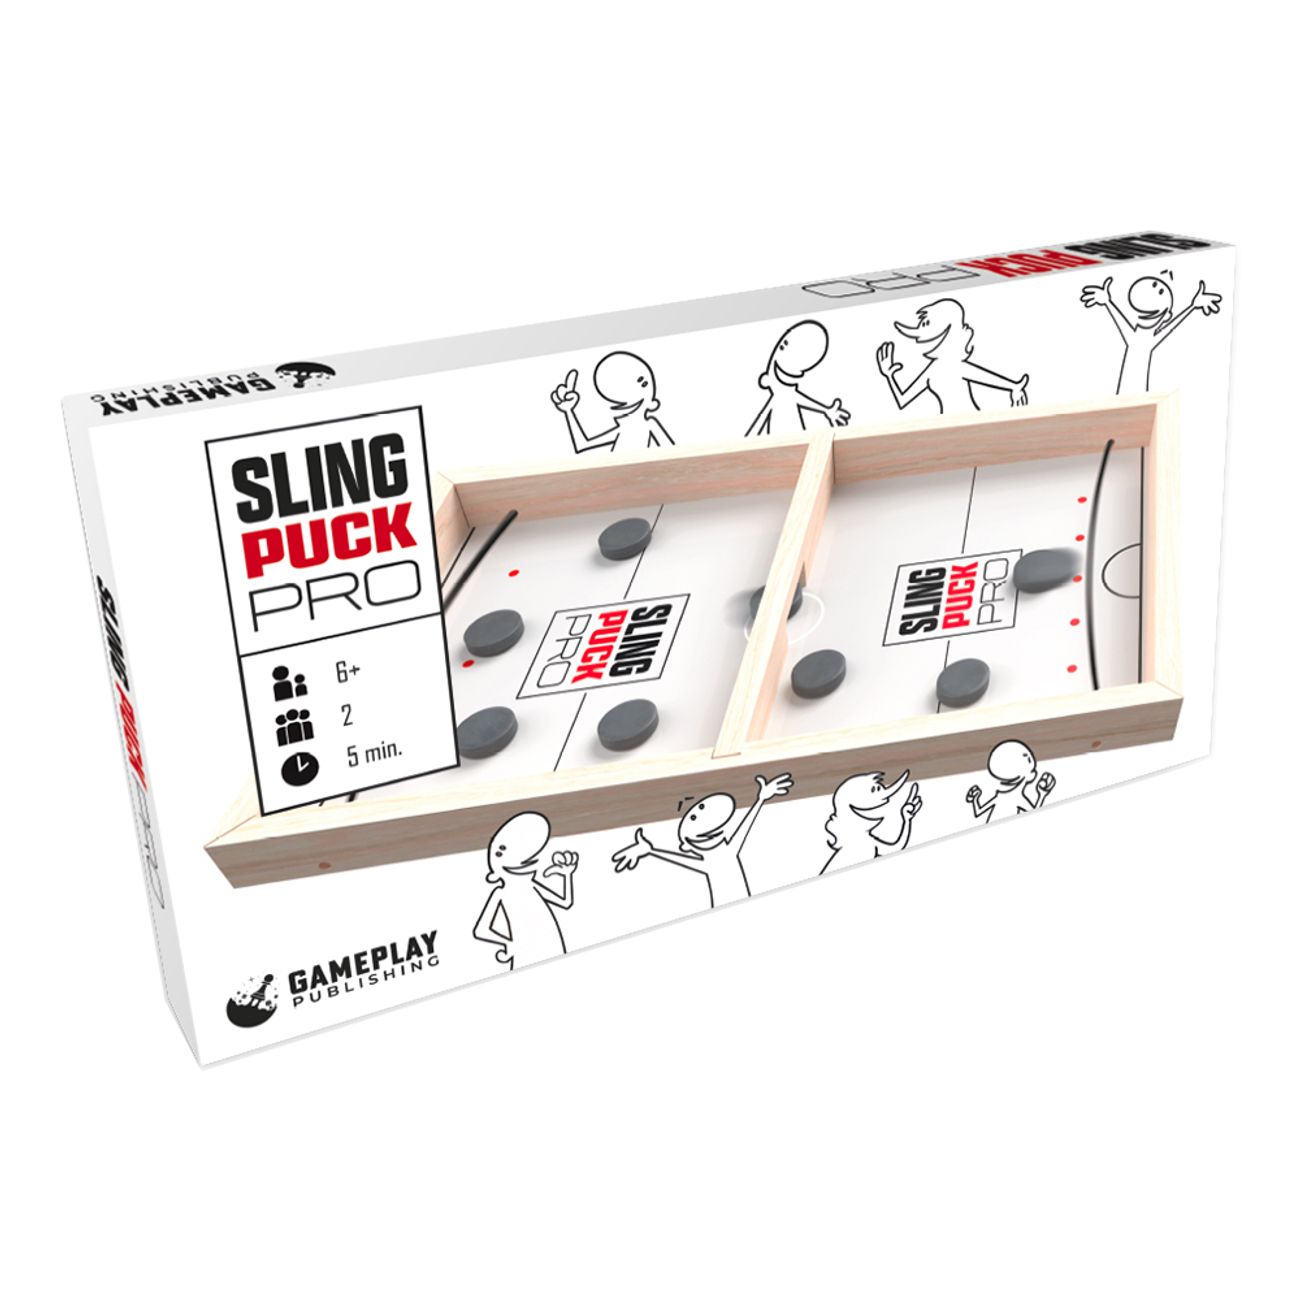 sling-puck-pro-spel-99981-1